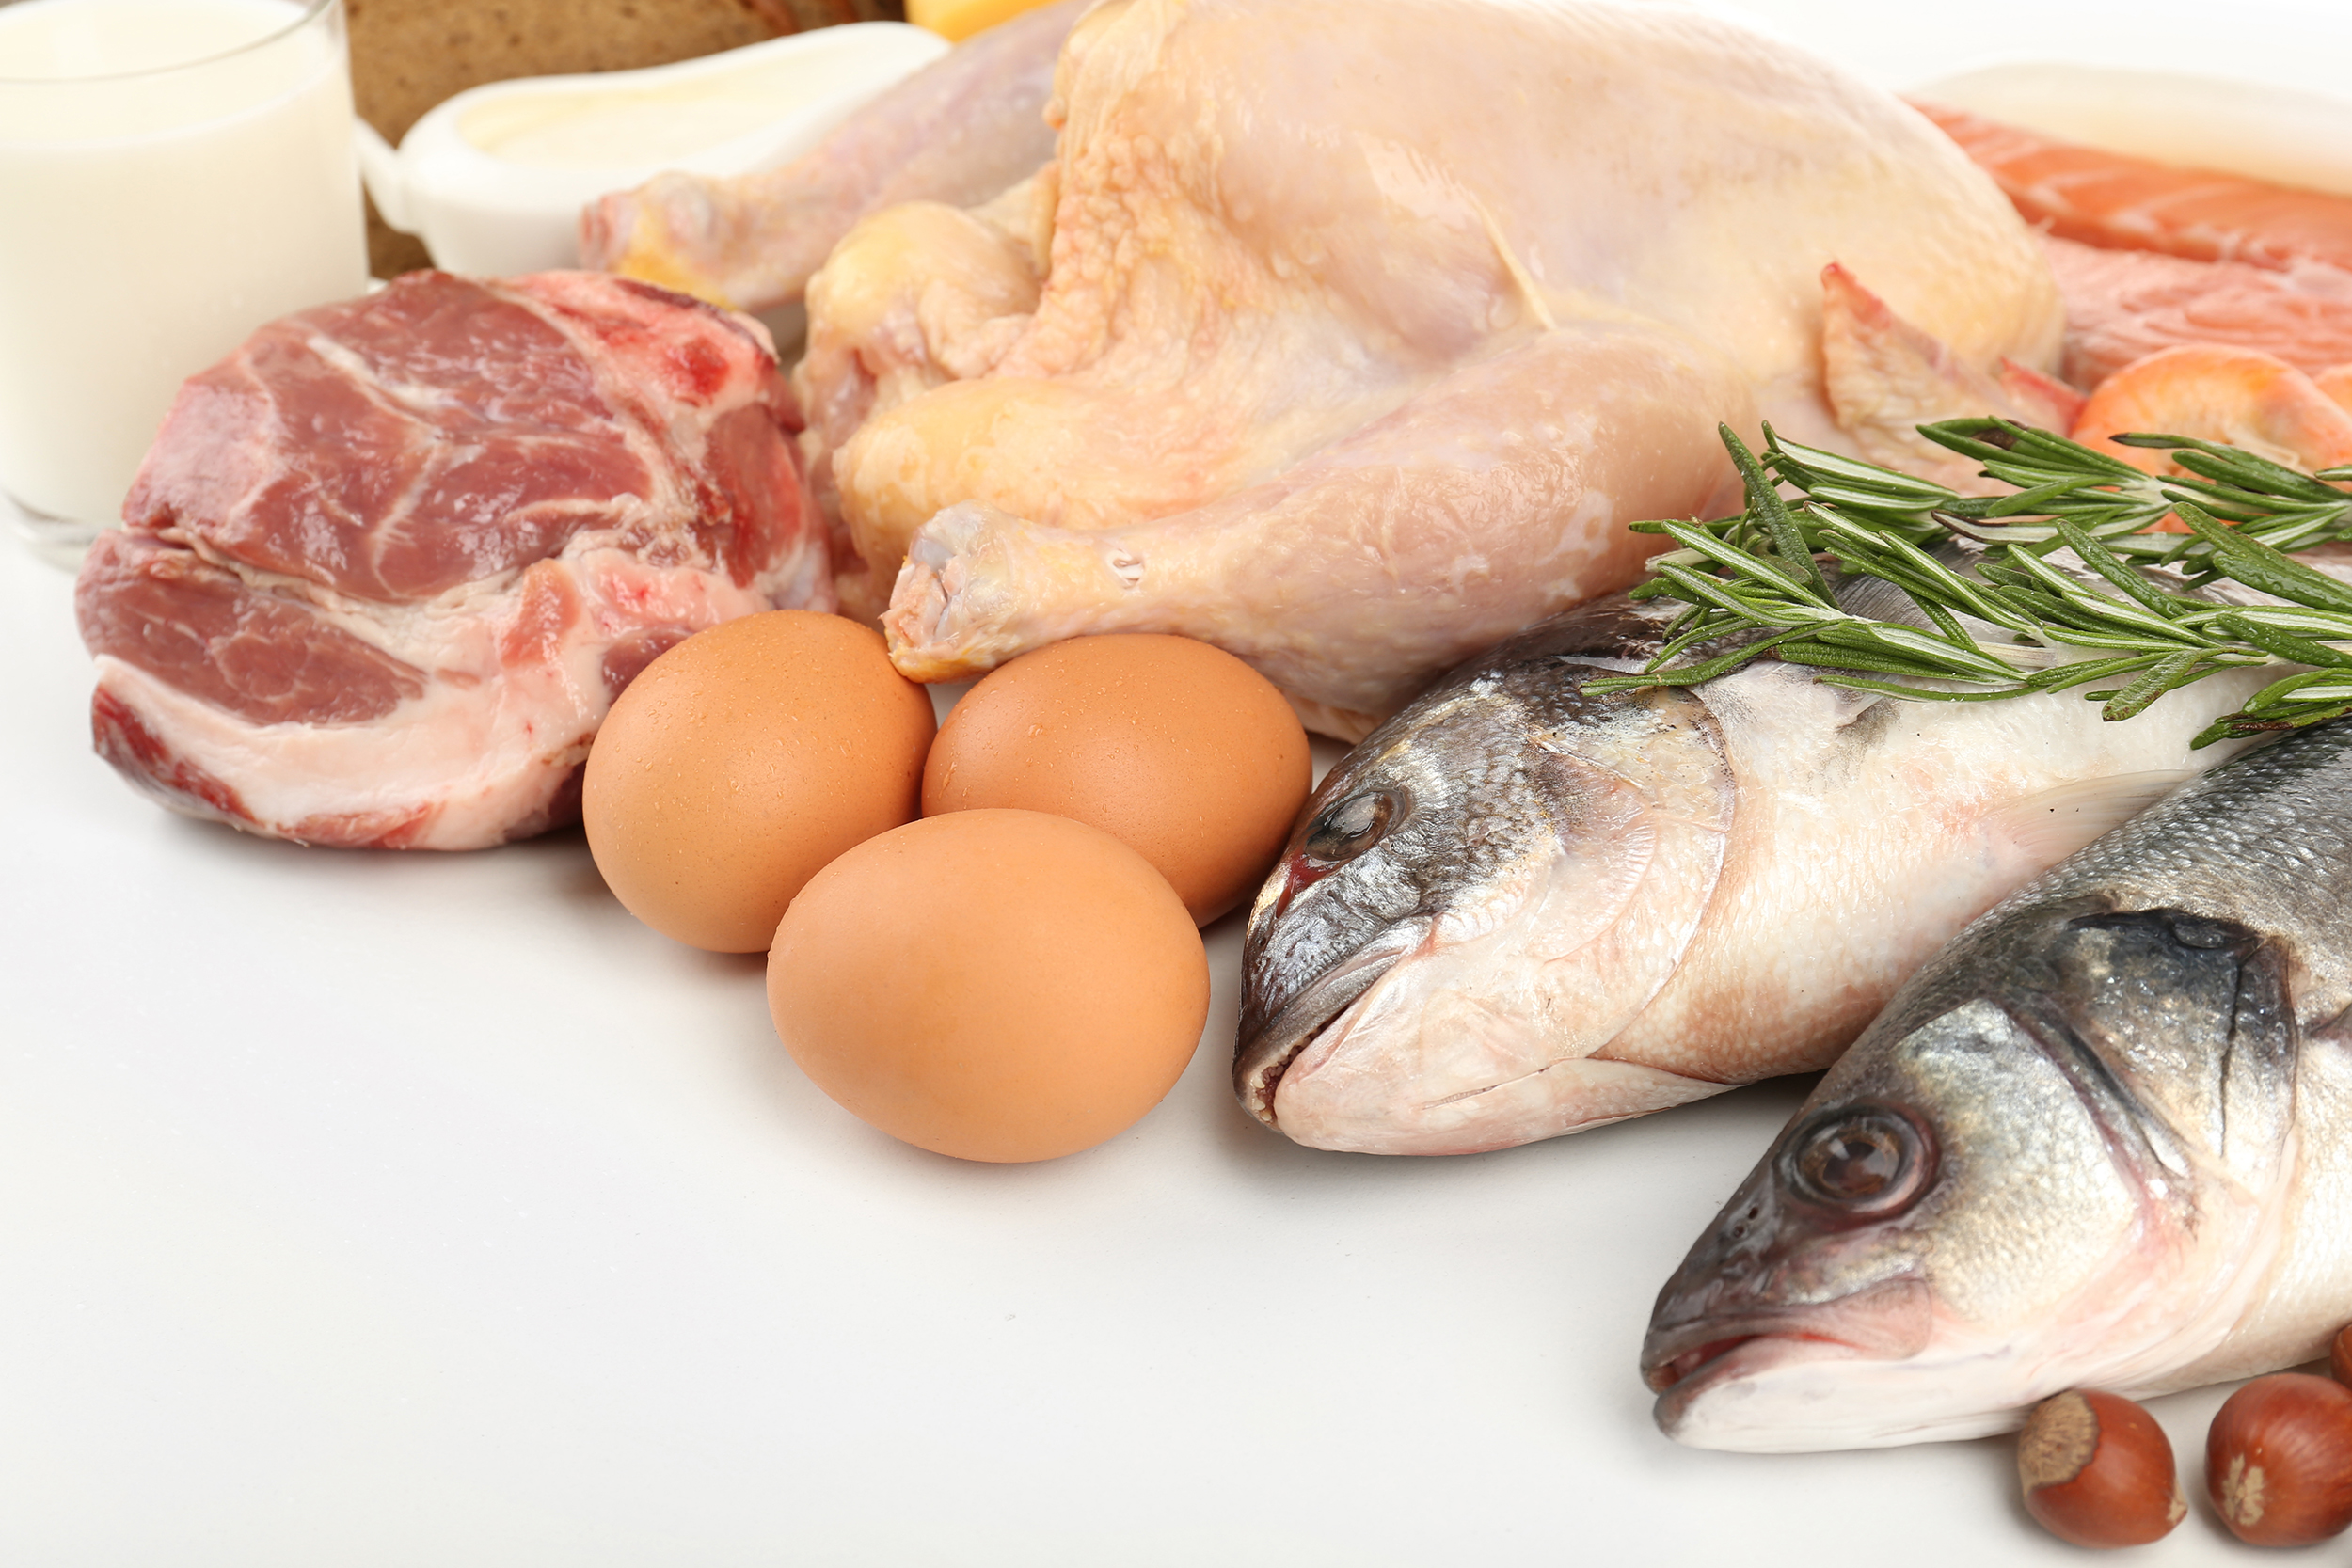 Comer pollo o pescado, que es más saludable.